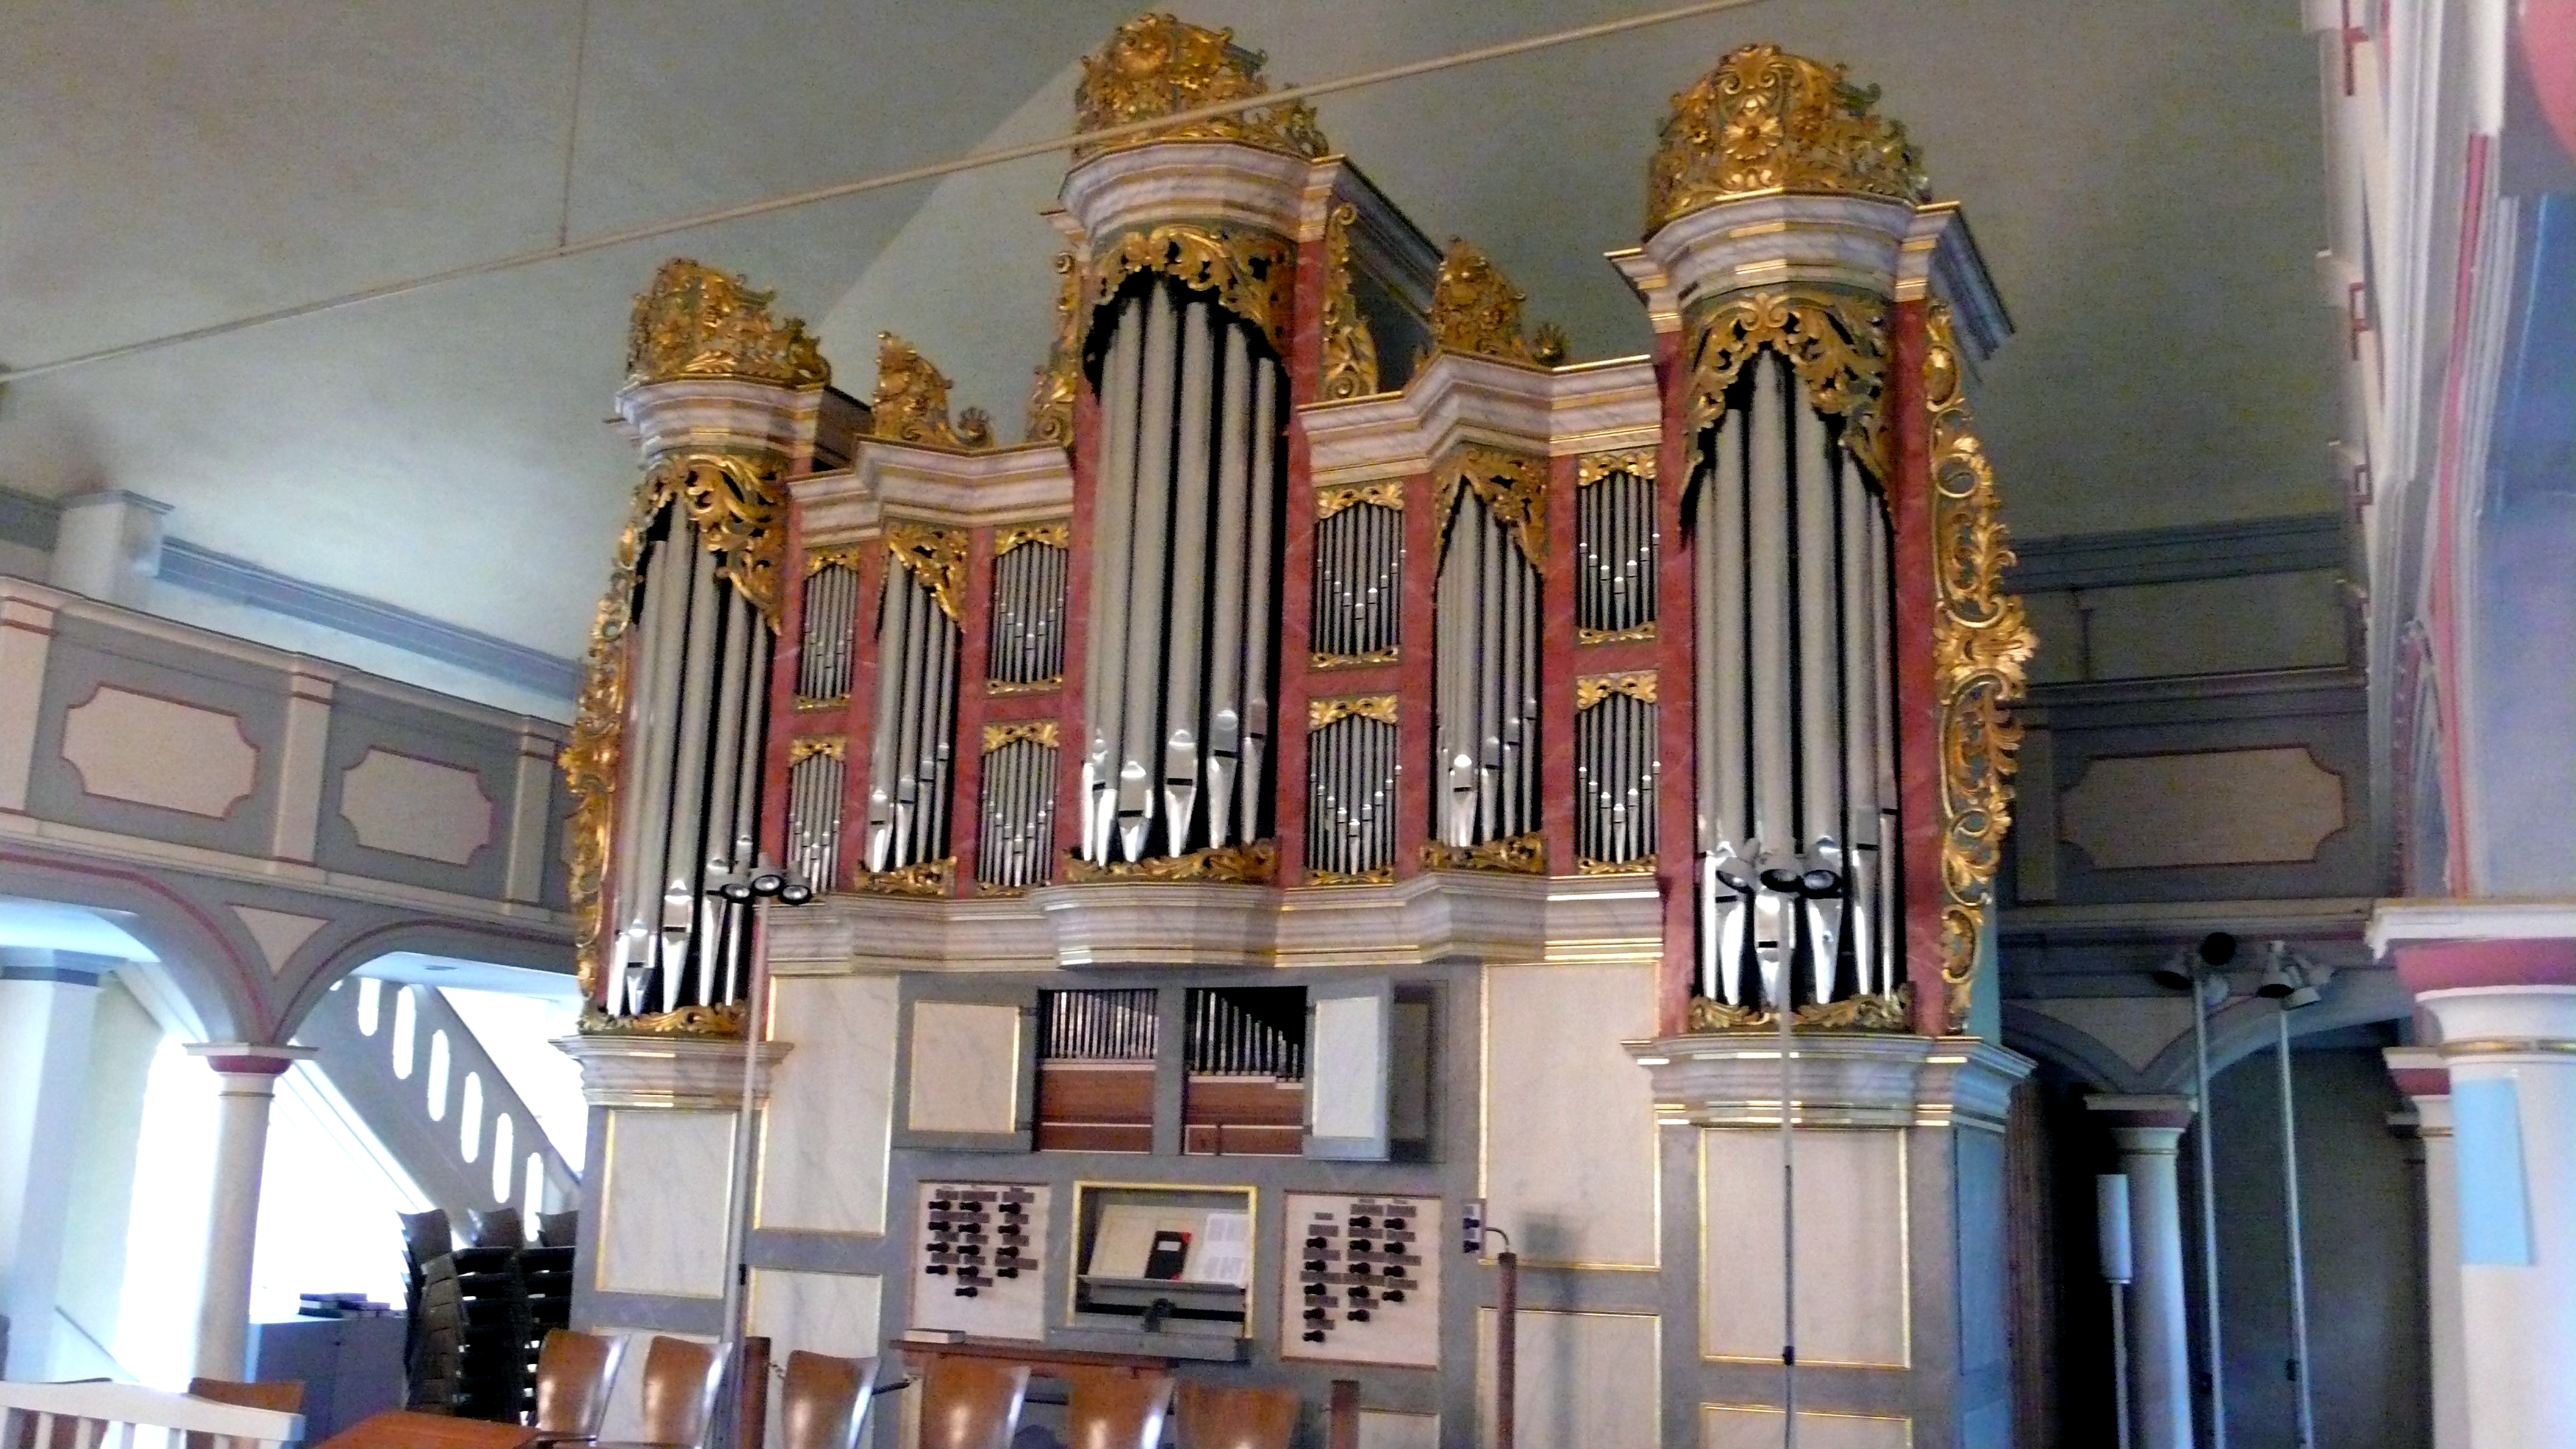 Christian-Vater-Orgel in der St. Nicolai-Kirche 